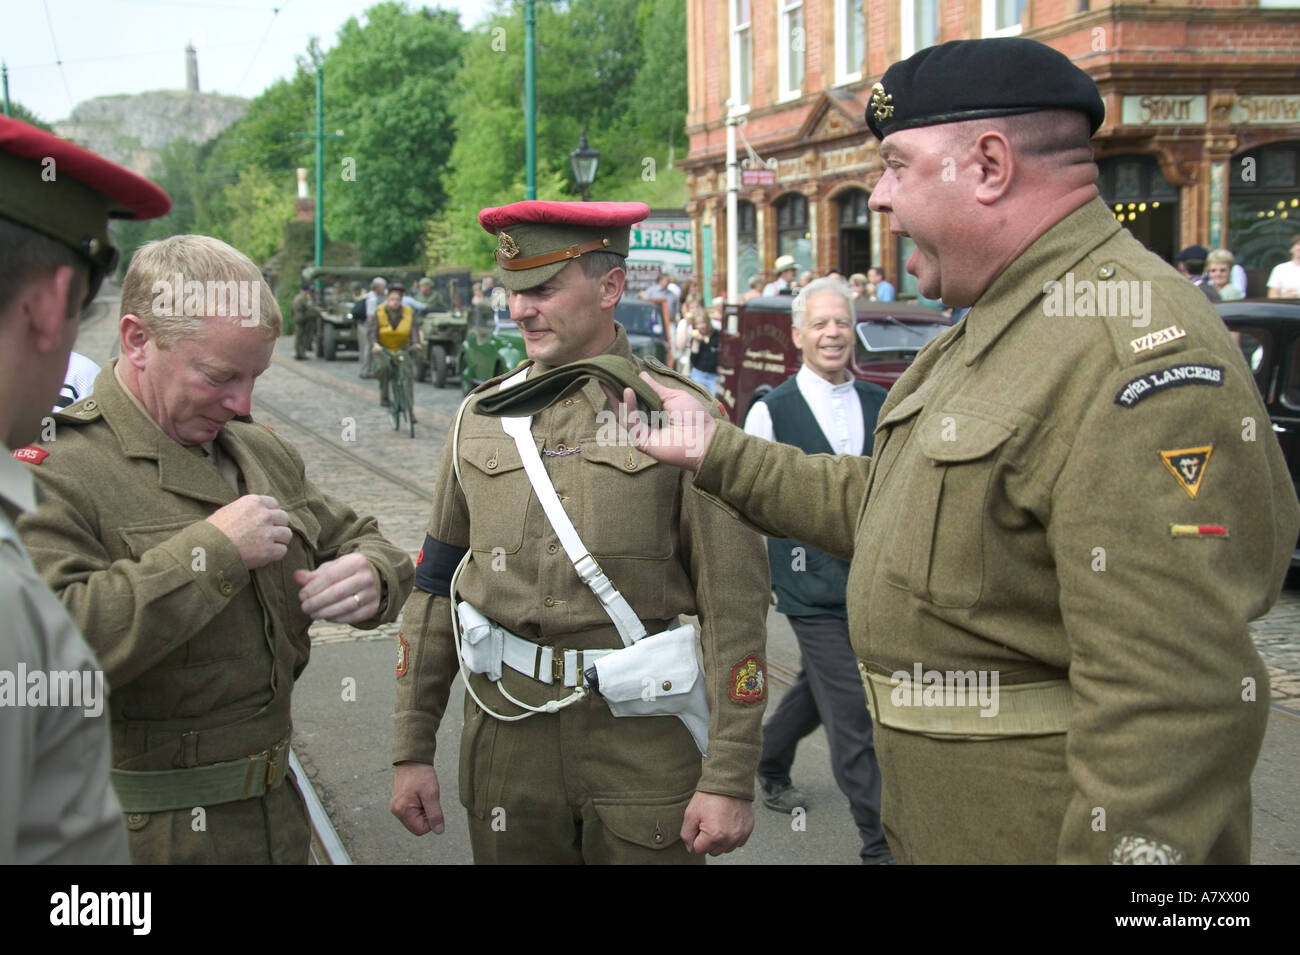 Los entusiastas MILITARES EN WW2 uniformes Foto de stock